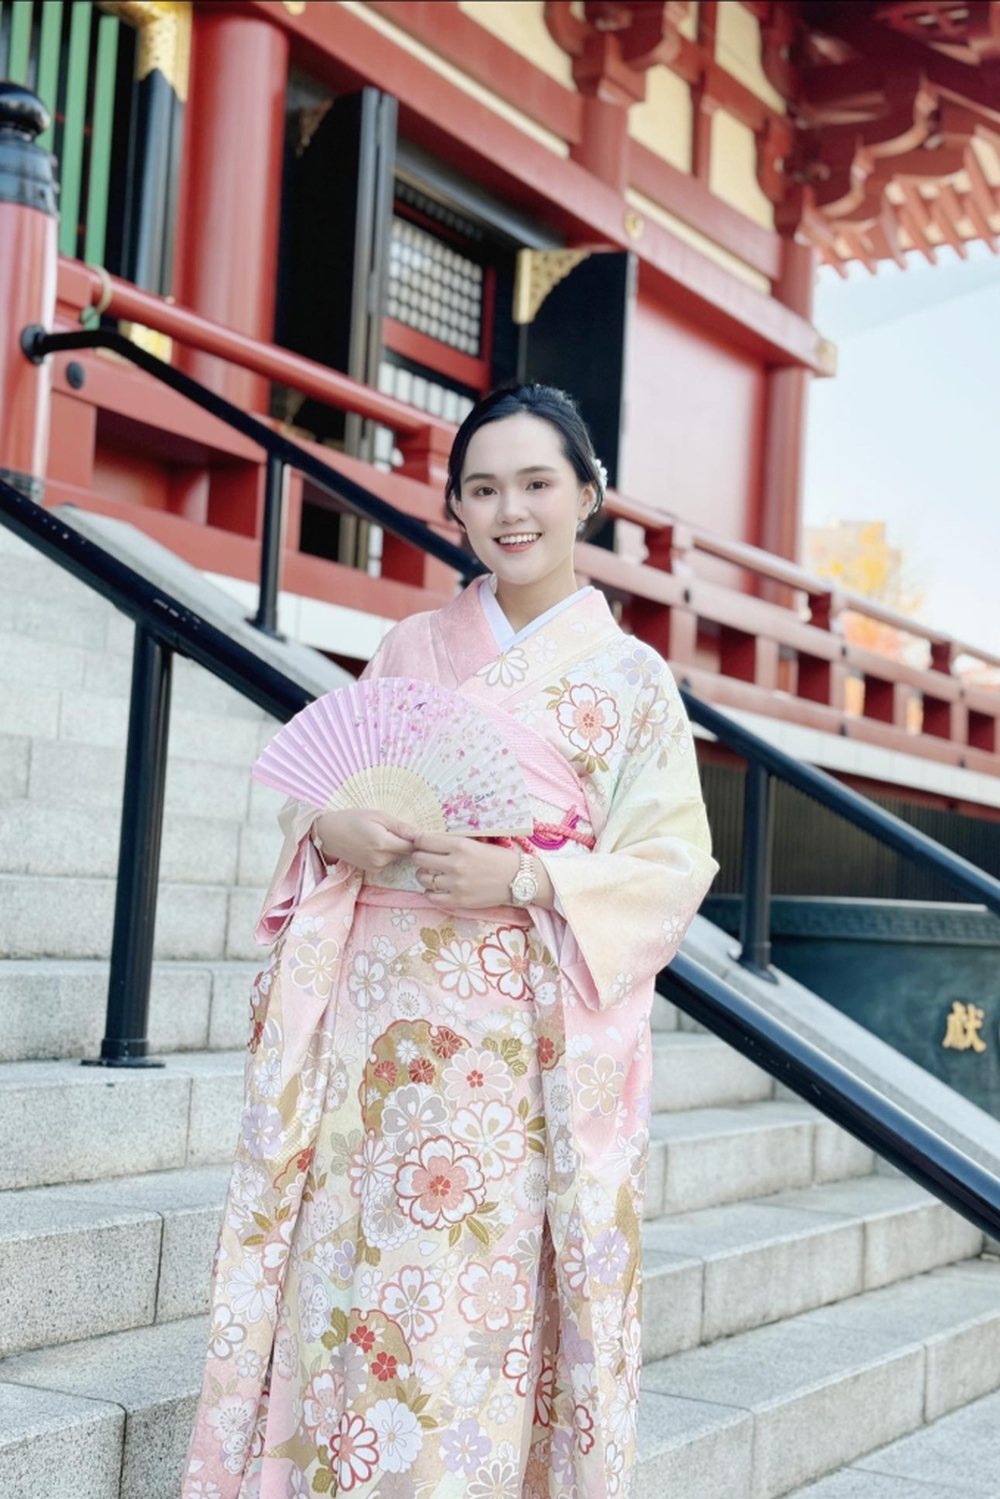 Quỳnh Anh khoe nhan sắc xinh đẹp như gái Nhật khi diện kimono, Duy Mạnh lập tức vào đánh dấu chủ quyền - Ảnh 1.